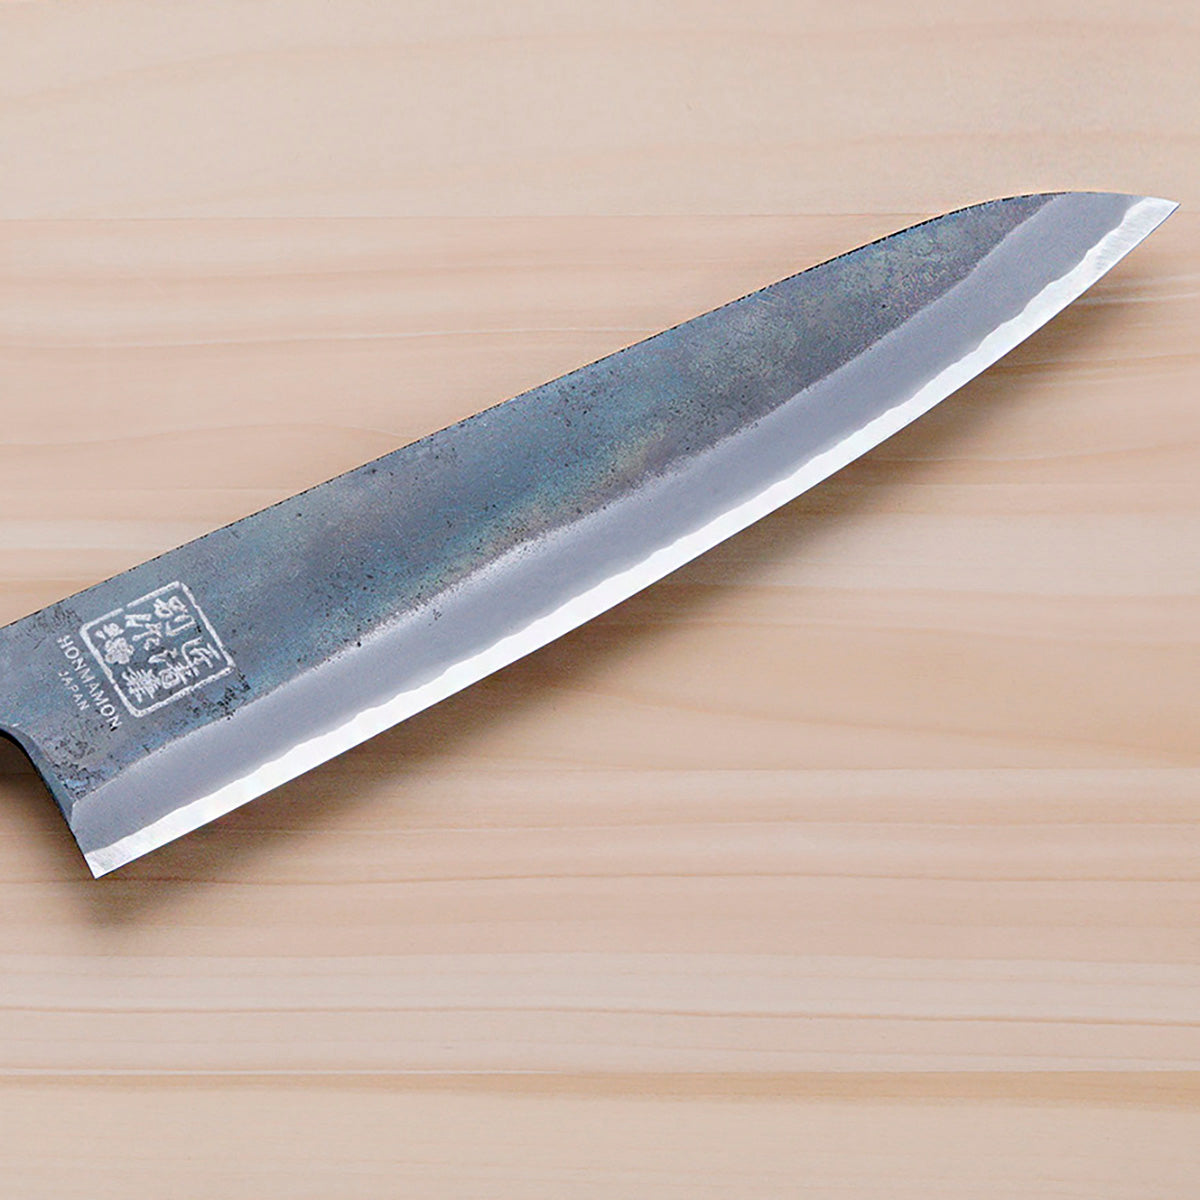 HONMAMON MOTOKANE Wa-Gyuto Kurouchi (Chef's Knife) Aogami Steel